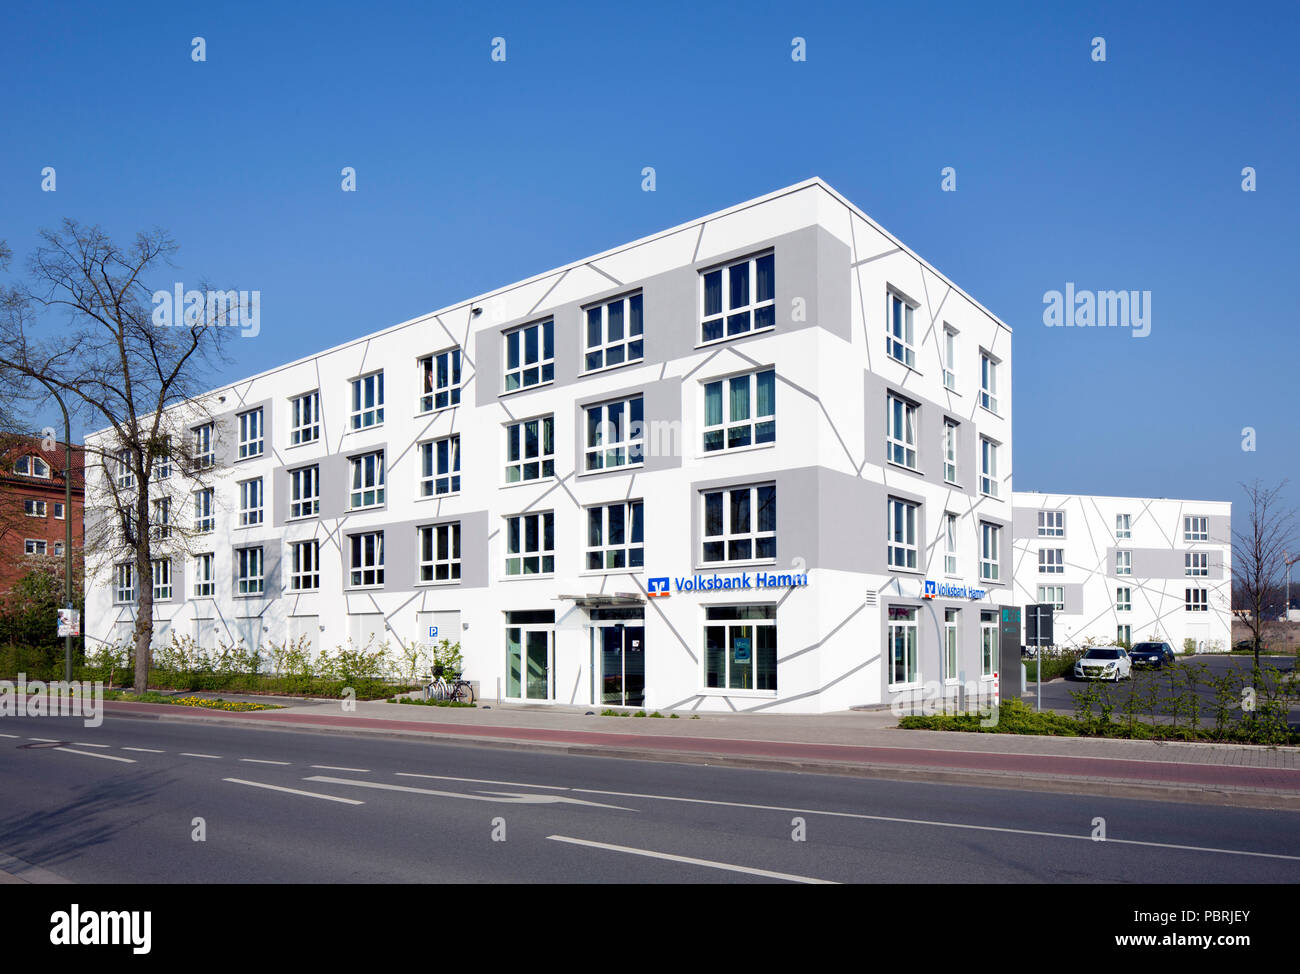 Case dello Studente Campus che vivono nella scienza trimestre Sci:Q, Hamm-Lippstadt università di scienze applicate, Hamm, la zona della Ruhr Foto Stock